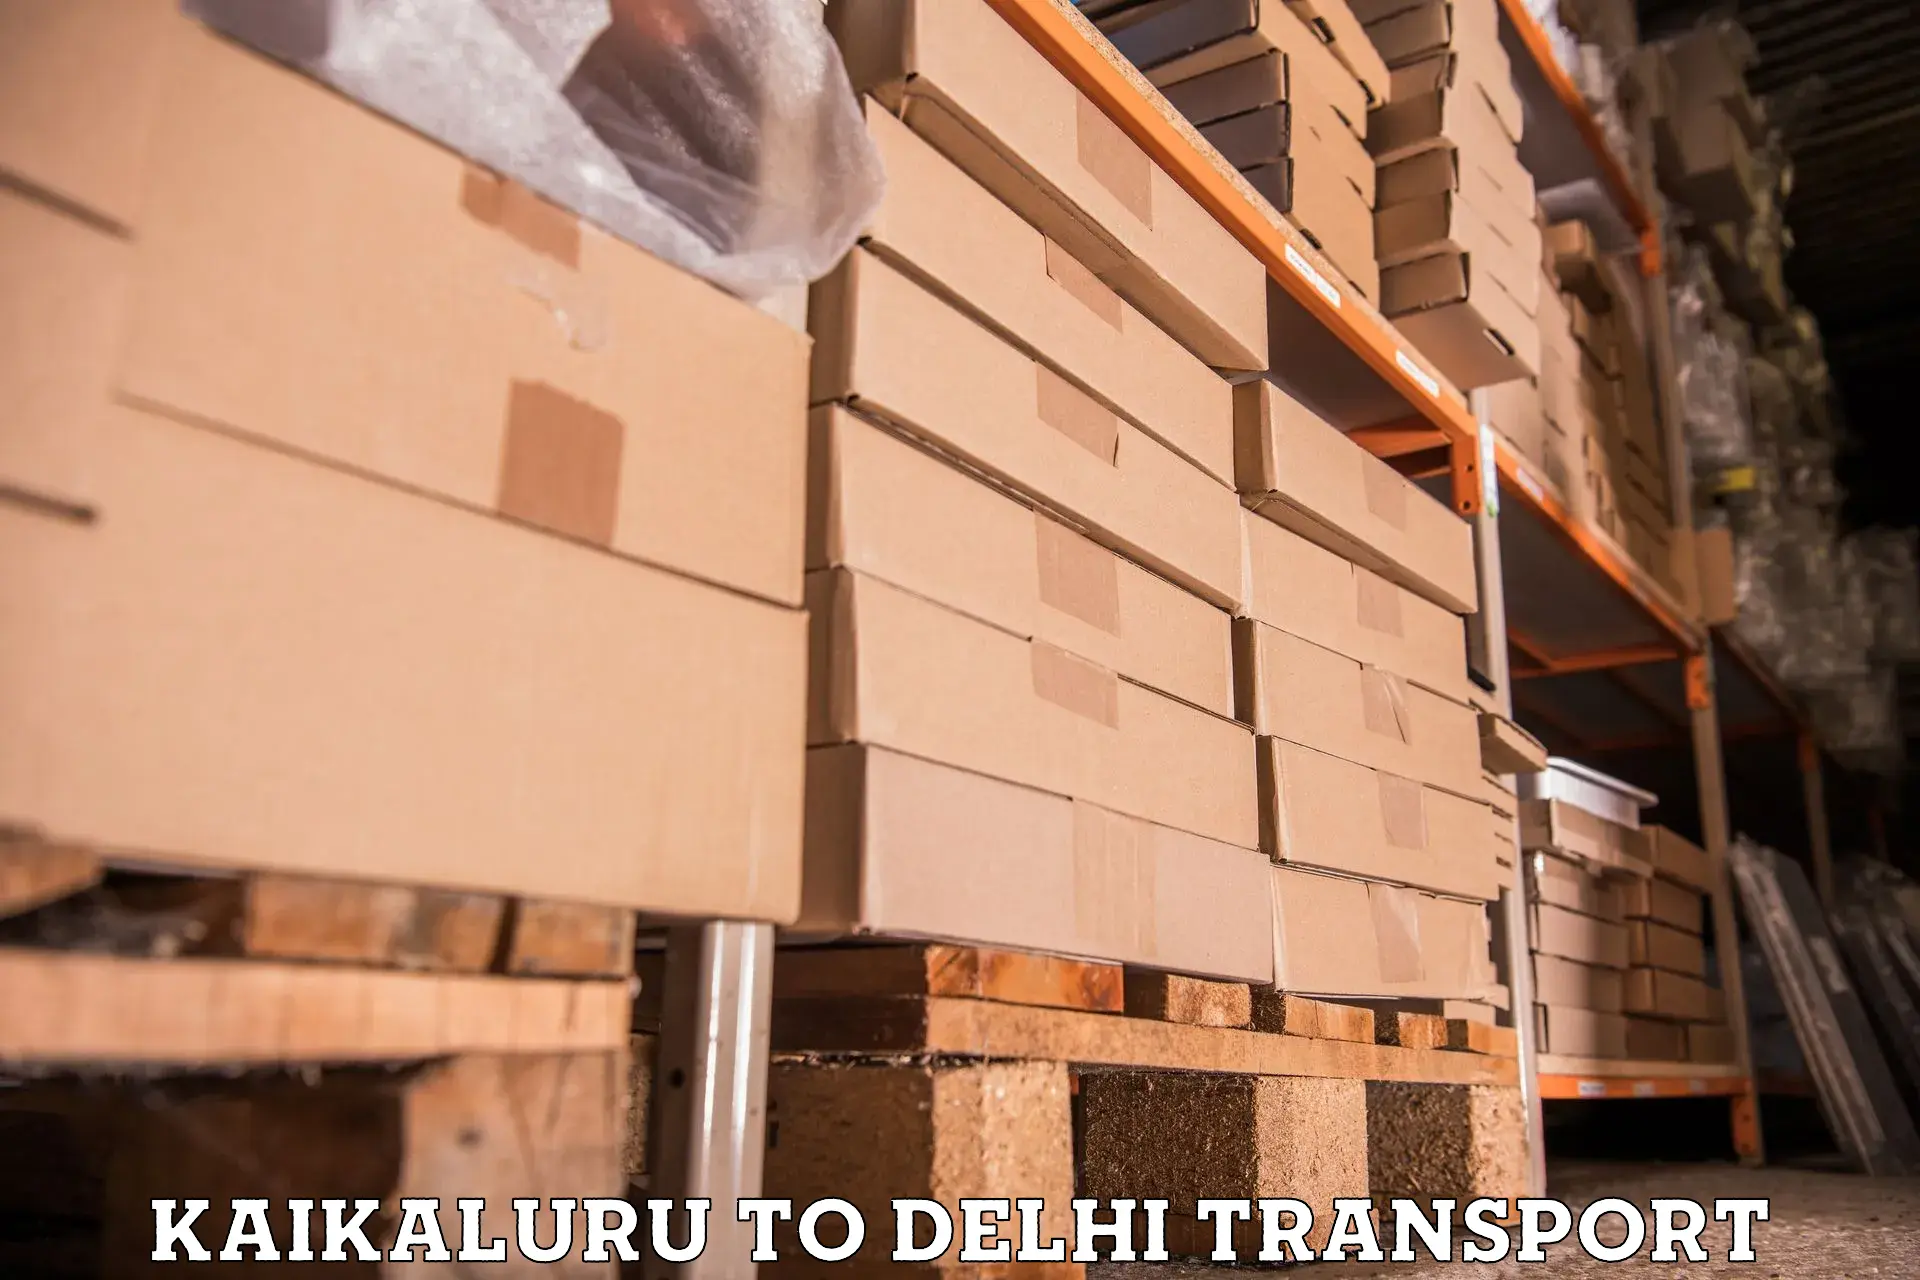 India truck logistics services in Kaikaluru to Jamia Millia Islamia New Delhi